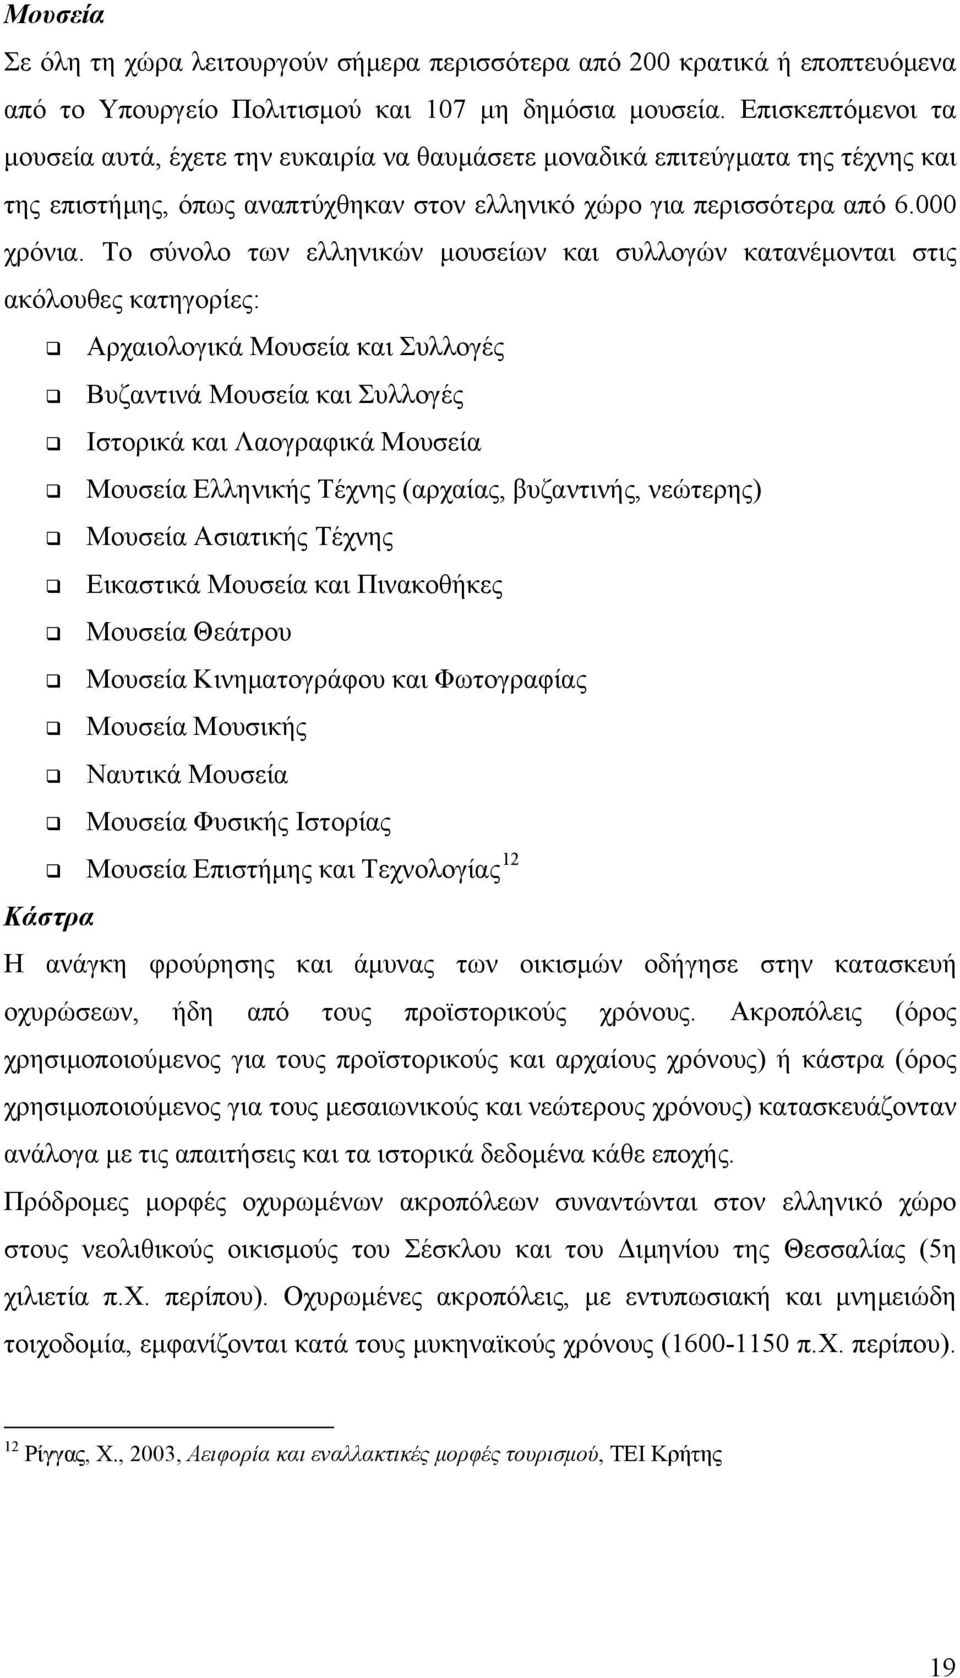 Το σύνολο των ελληνικών μουσείων και συλλογών κατανέμονται στις ακόλουθες κατηγορίες: Αρχαιολογικά Μουσεία και Συλλογές Βυζαντινά Μουσεία και Συλλογές Ιστορικά και Λαογραφικά Μουσεία Μουσεία